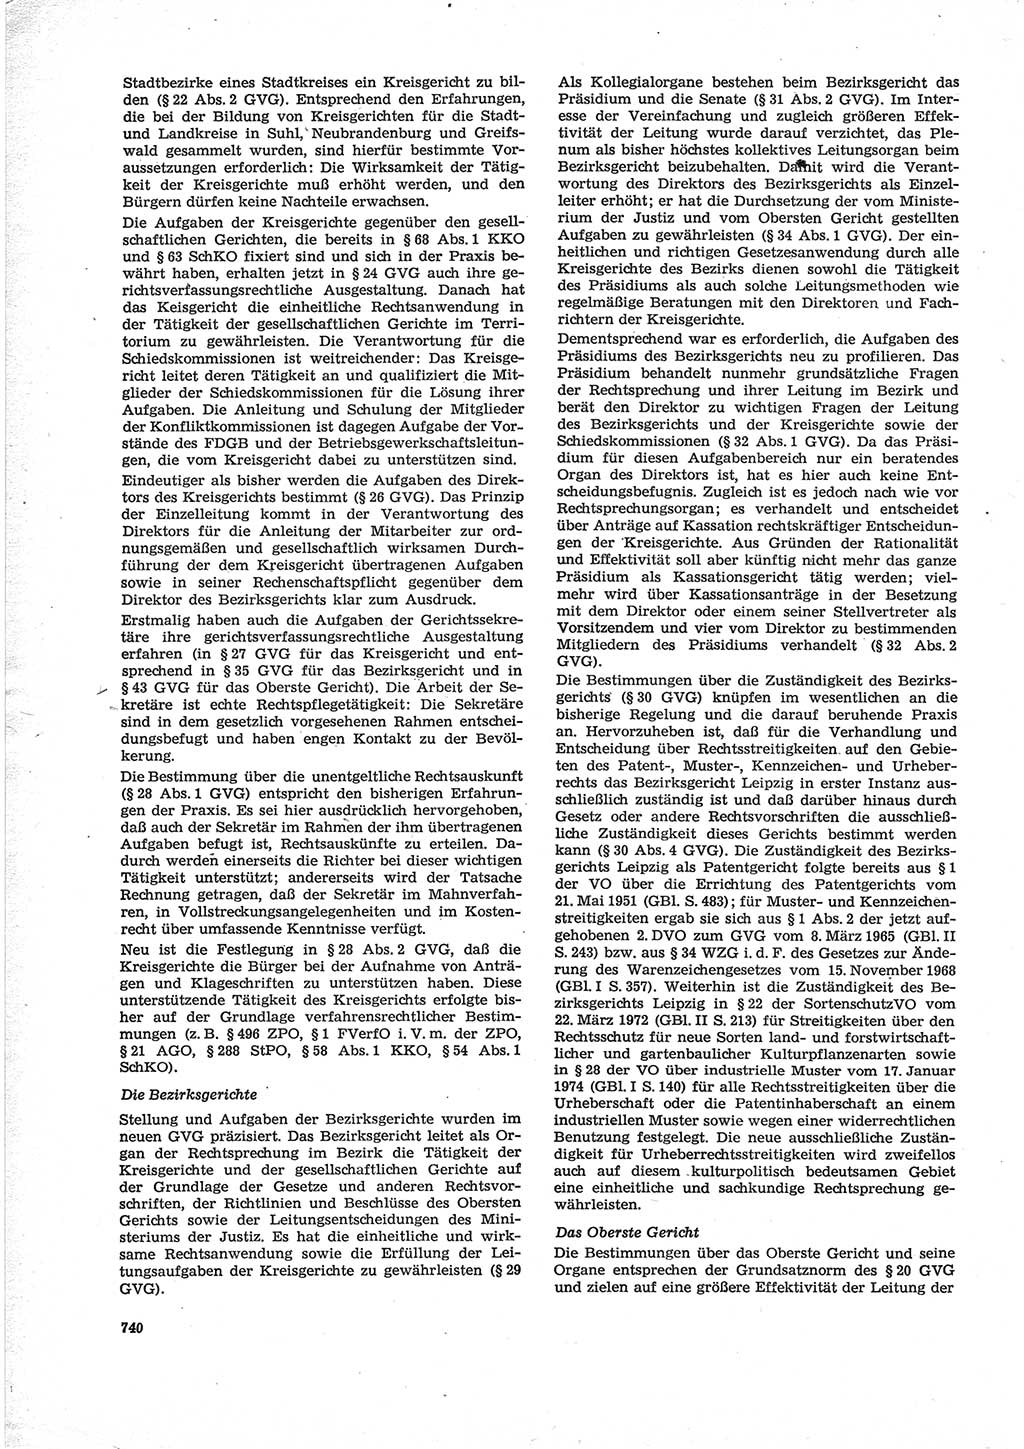 Neue Justiz (NJ), Zeitschrift für Recht und Rechtswissenschaft [Deutsche Demokratische Republik (DDR)], 28. Jahrgang 1974, Seite 740 (NJ DDR 1974, S. 740)